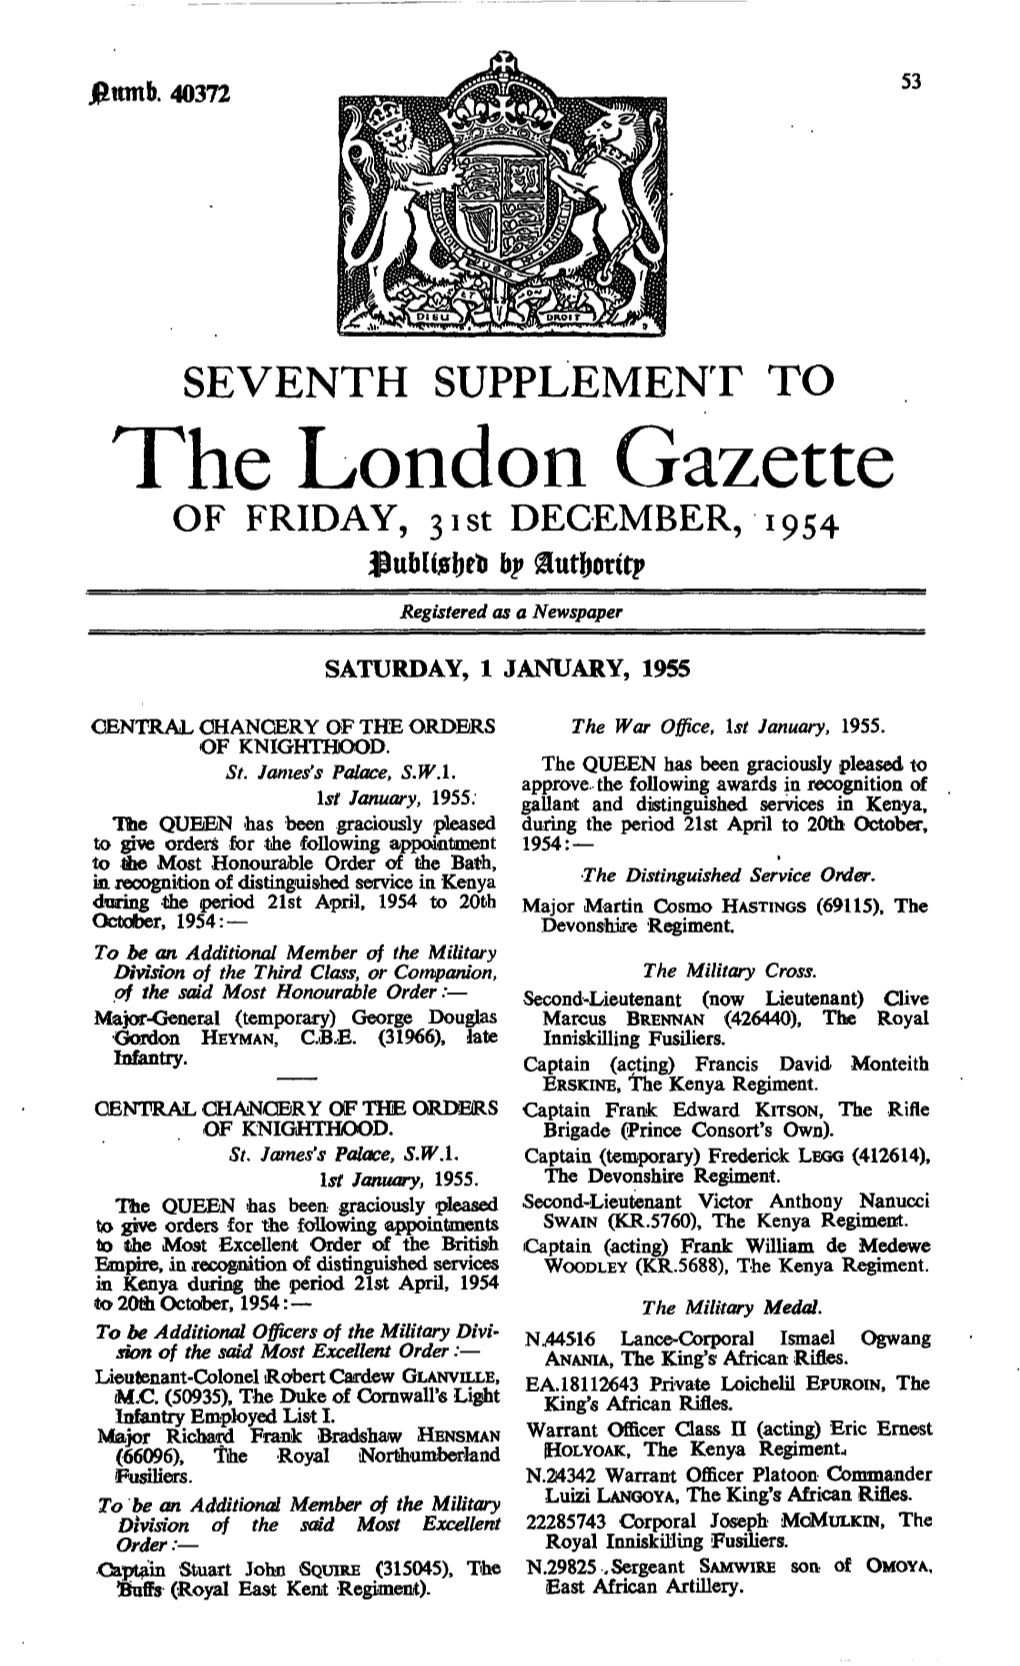 The London Gazette of FRIDAY, 3Ist DECEMBER, 1954 Fhtblij5f)Rt> Bp